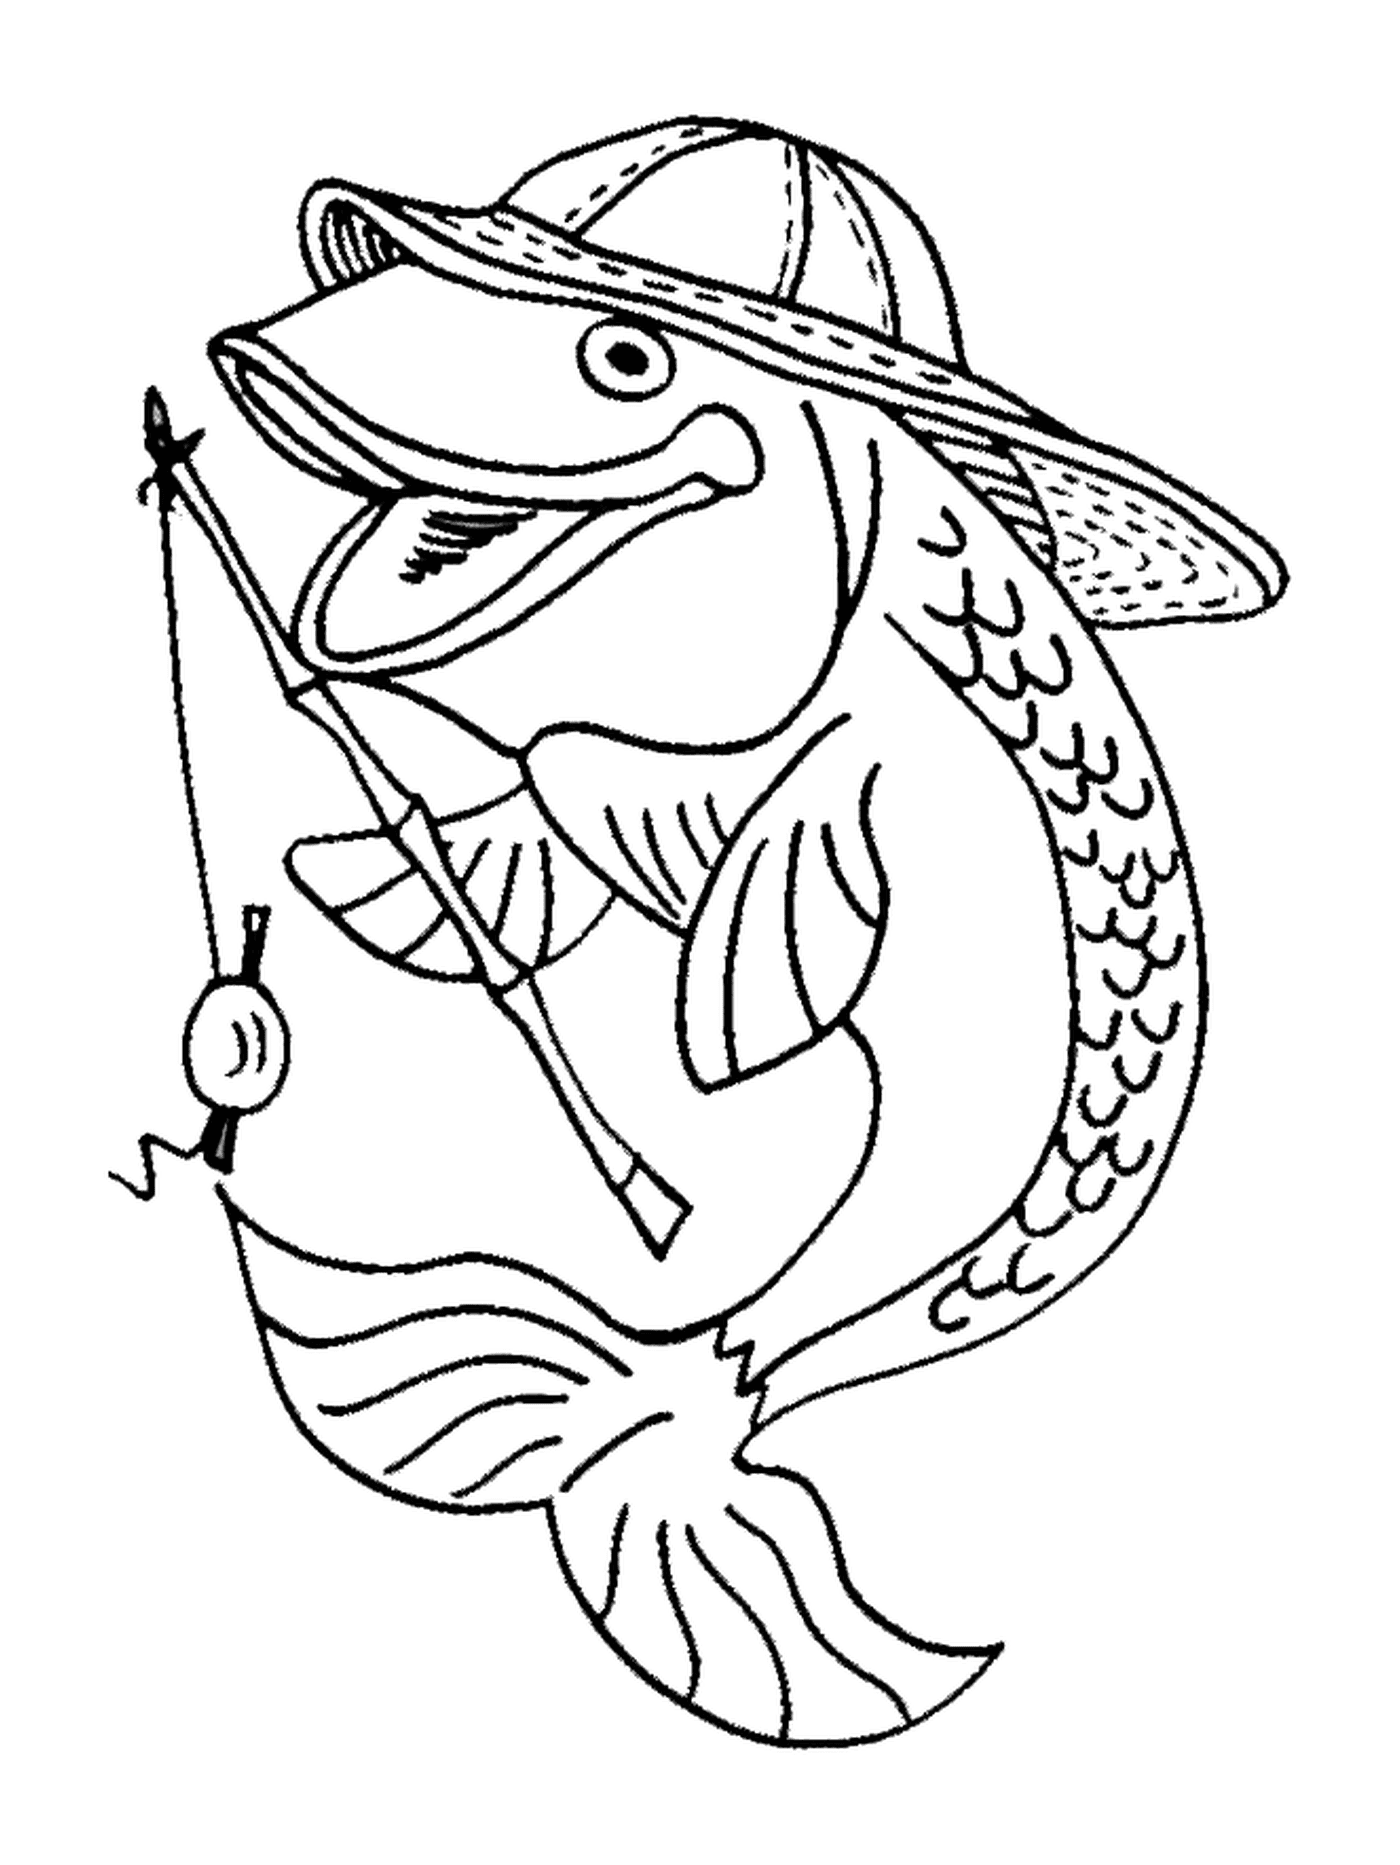  Pescado con sombrero 